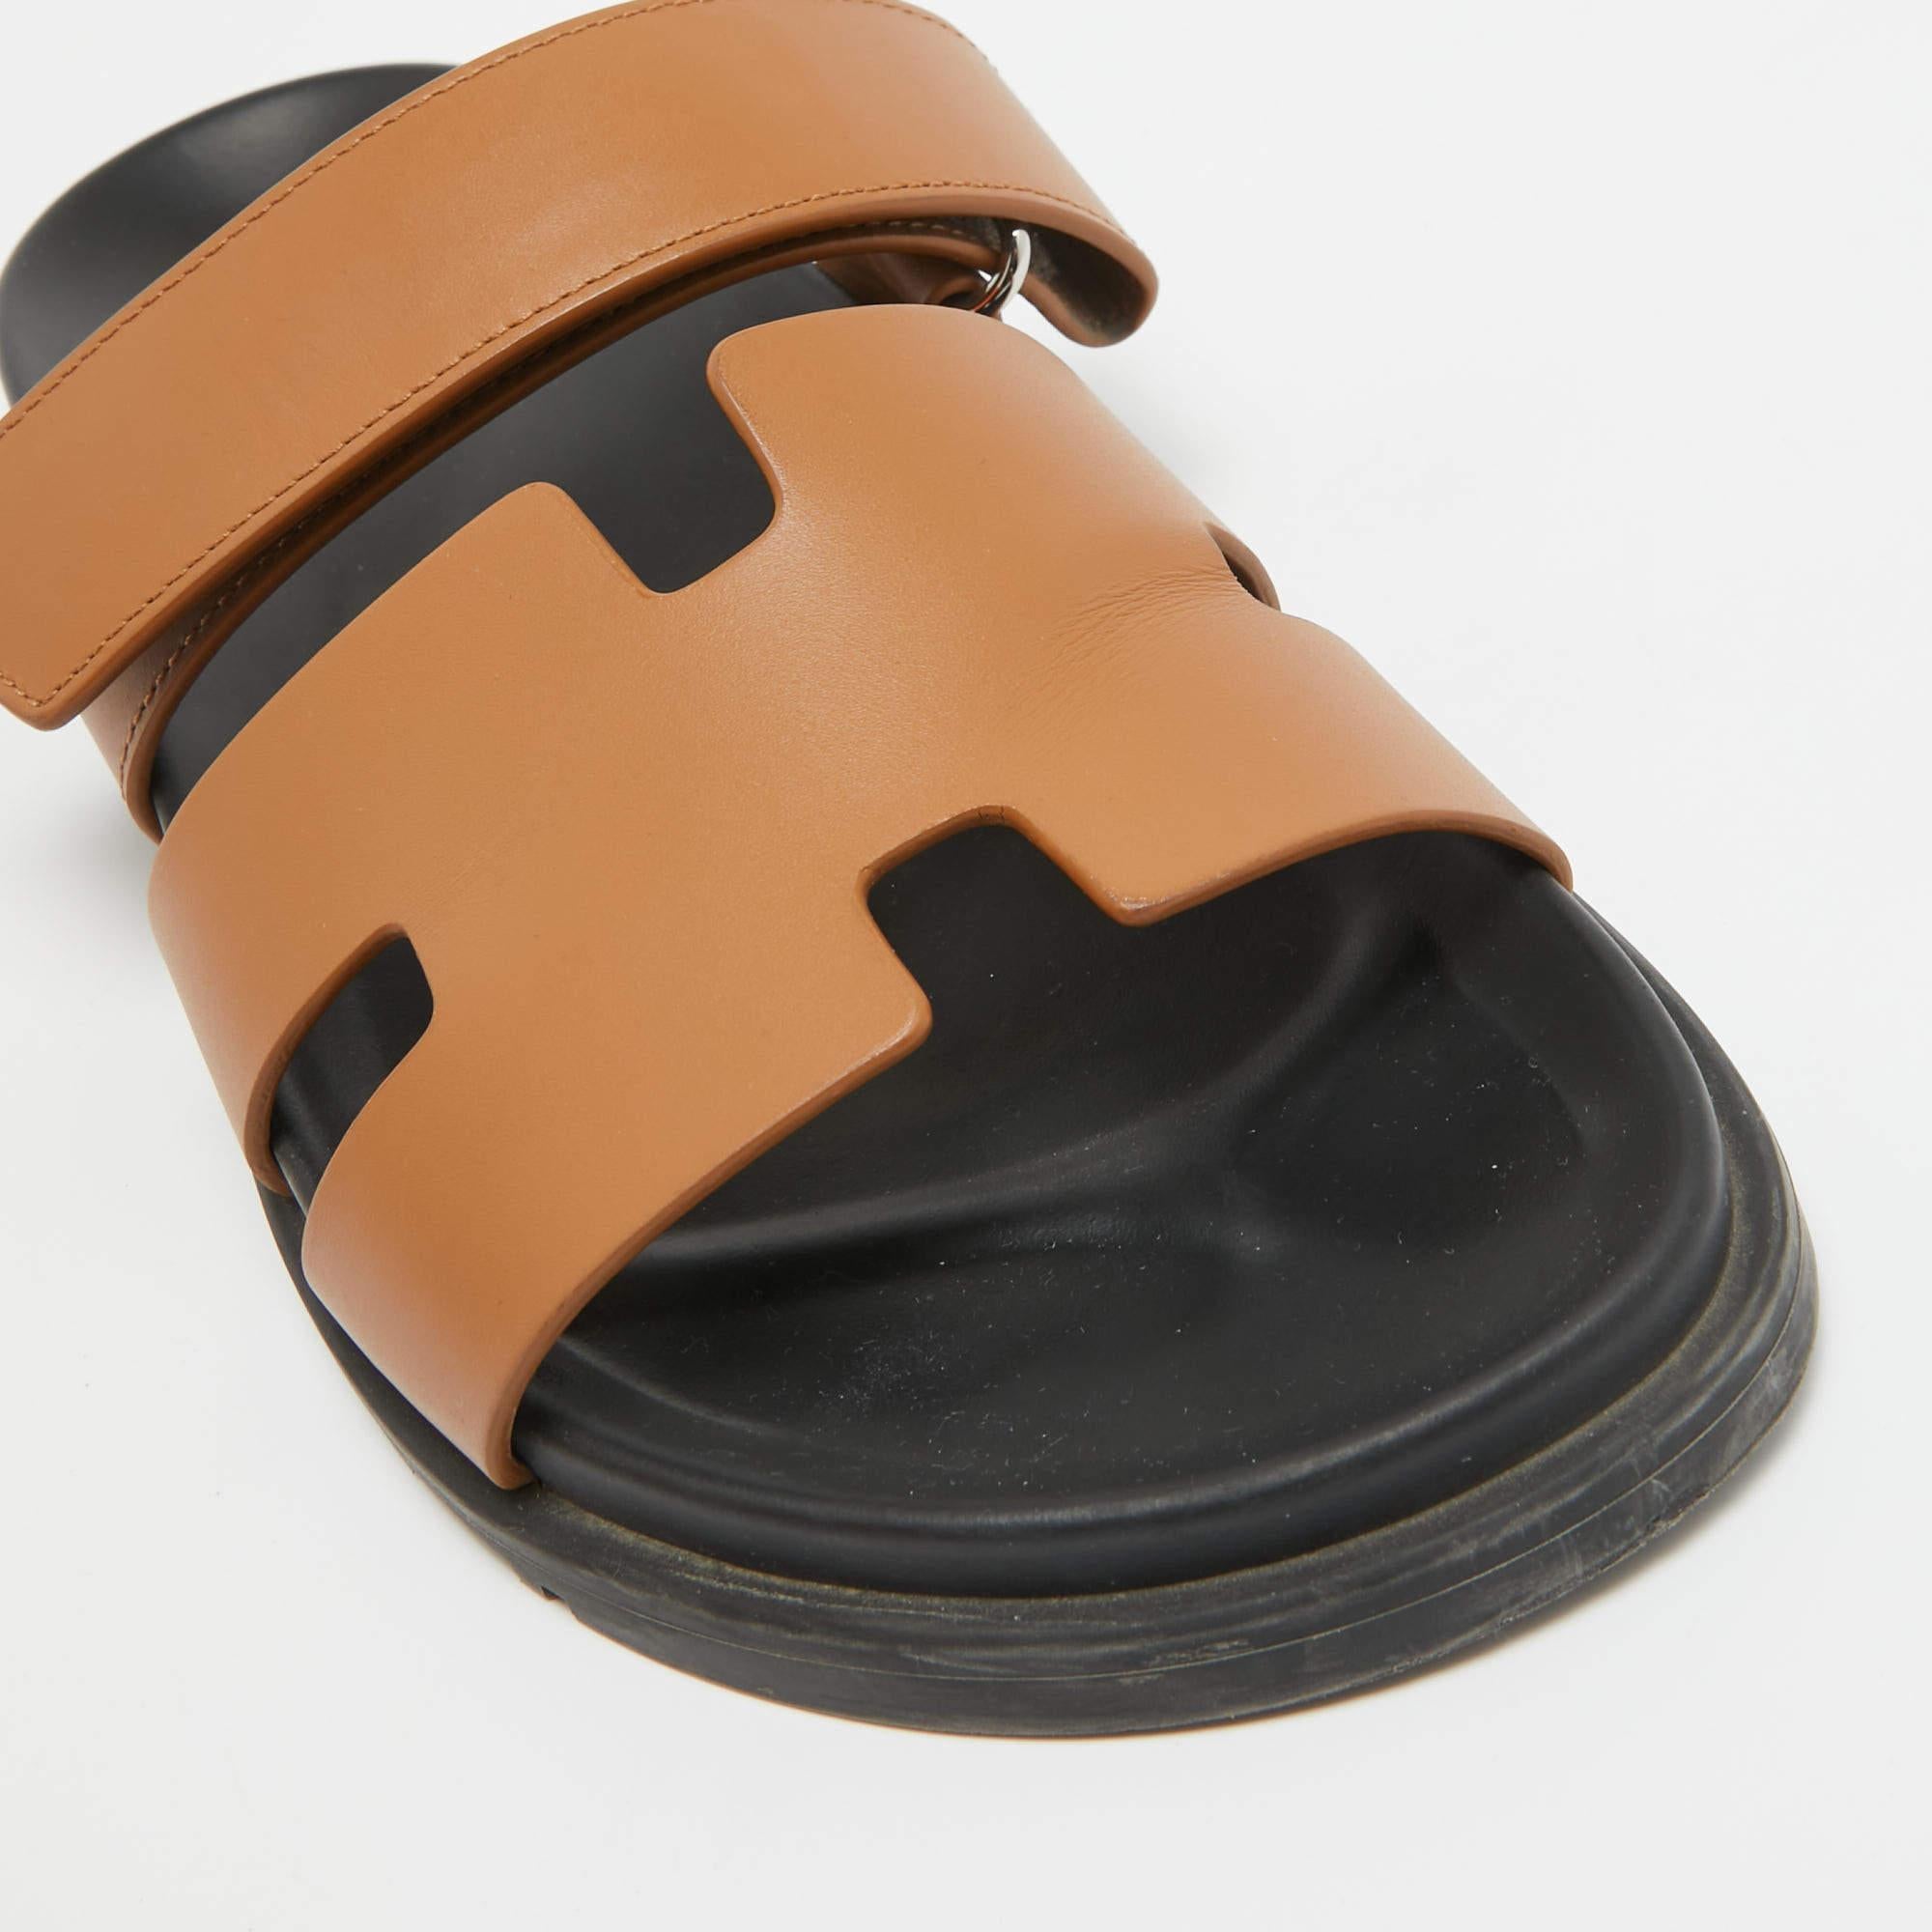 Diese Sandalen umrahmen Ihre Füße auf elegante Weise. Sie sind aus hochwertigen MATERIALEN gefertigt, haben ein edles Design und bequeme Innensohlen.


Enthält: Original-Staubbeutel, Original-Box